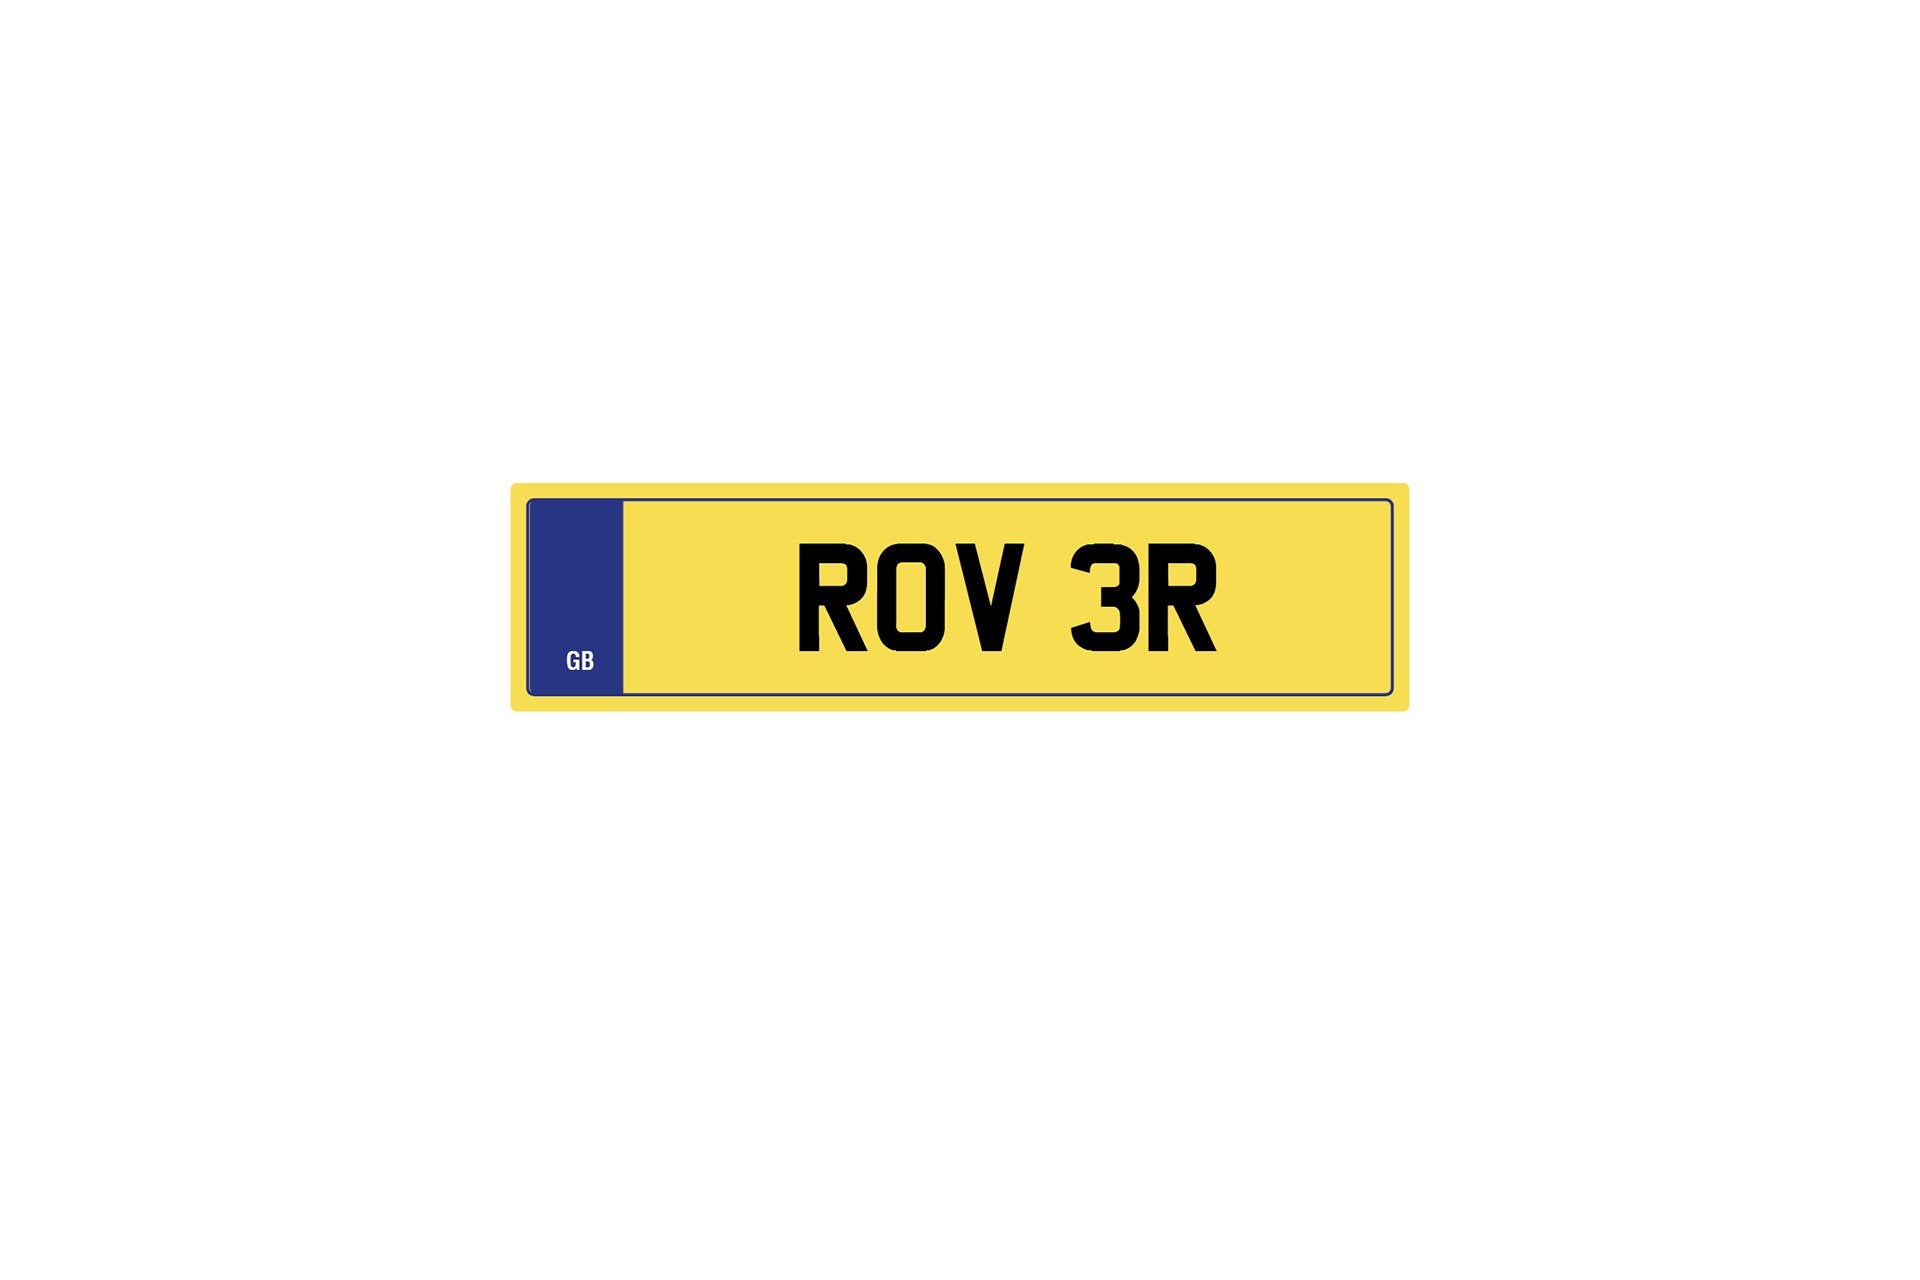 Private Plate R0V 3R by Kahn - Image 245